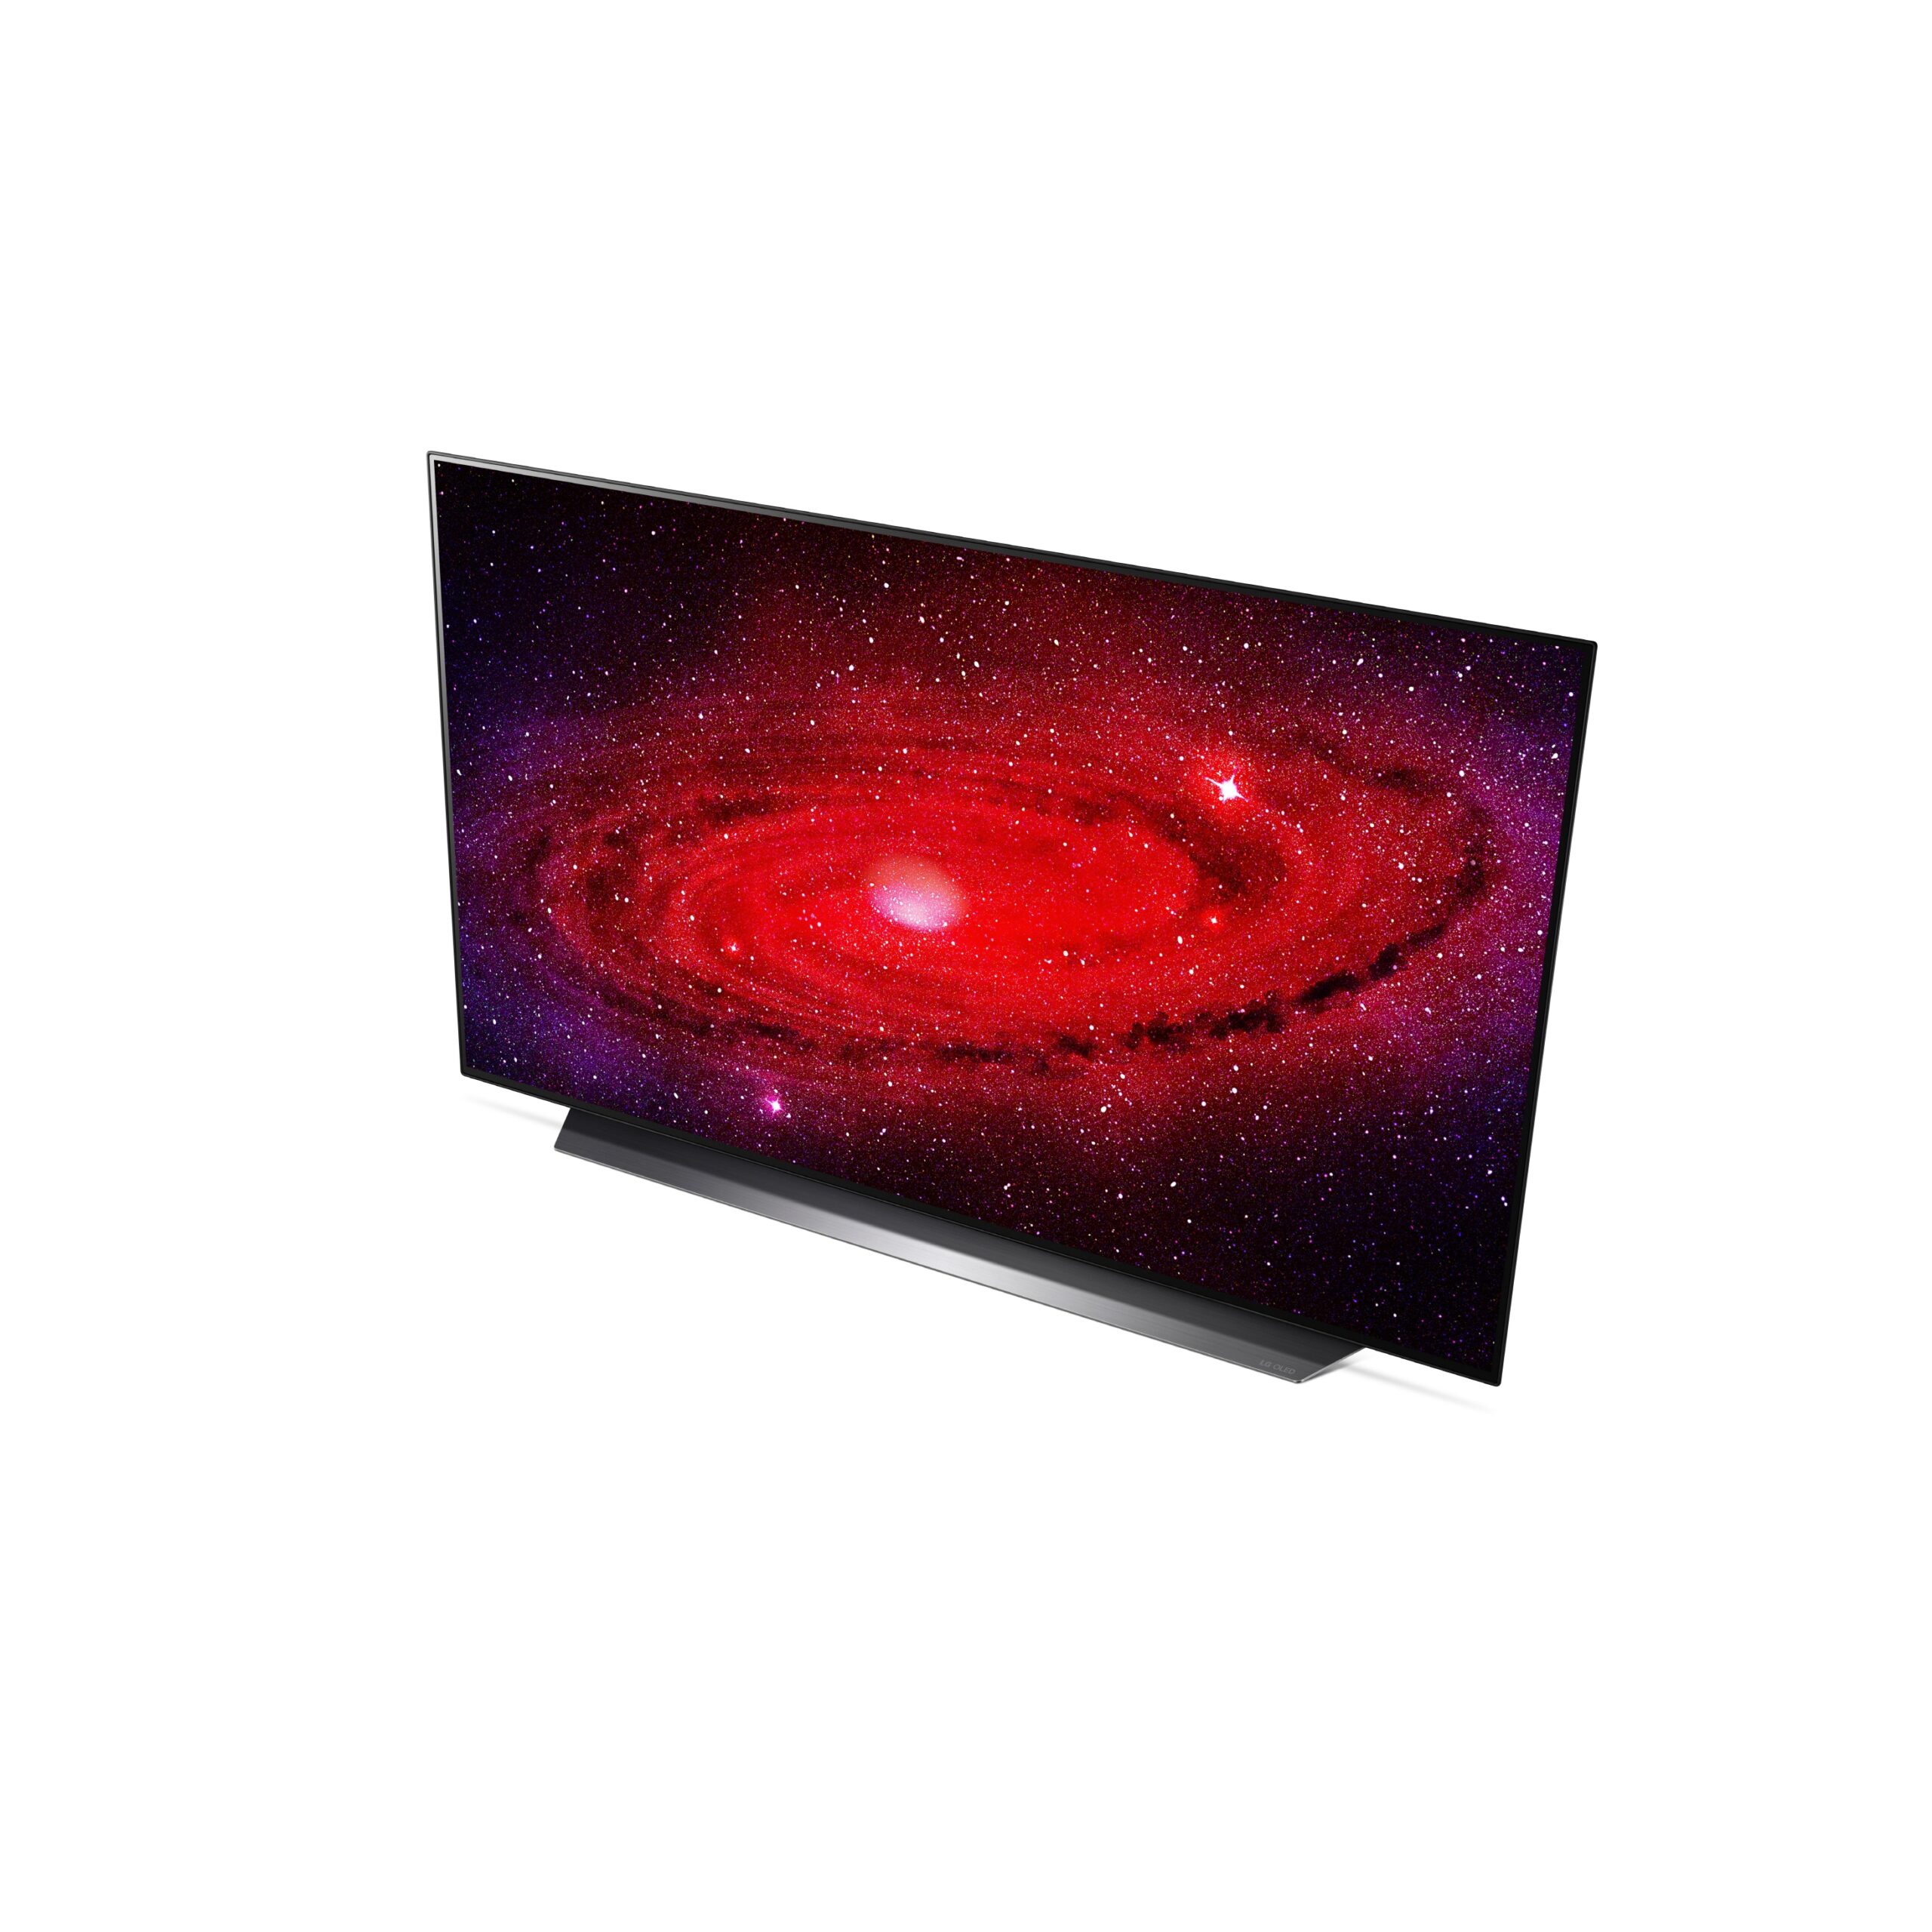 LG 48 inch OLED TV 01 scaled